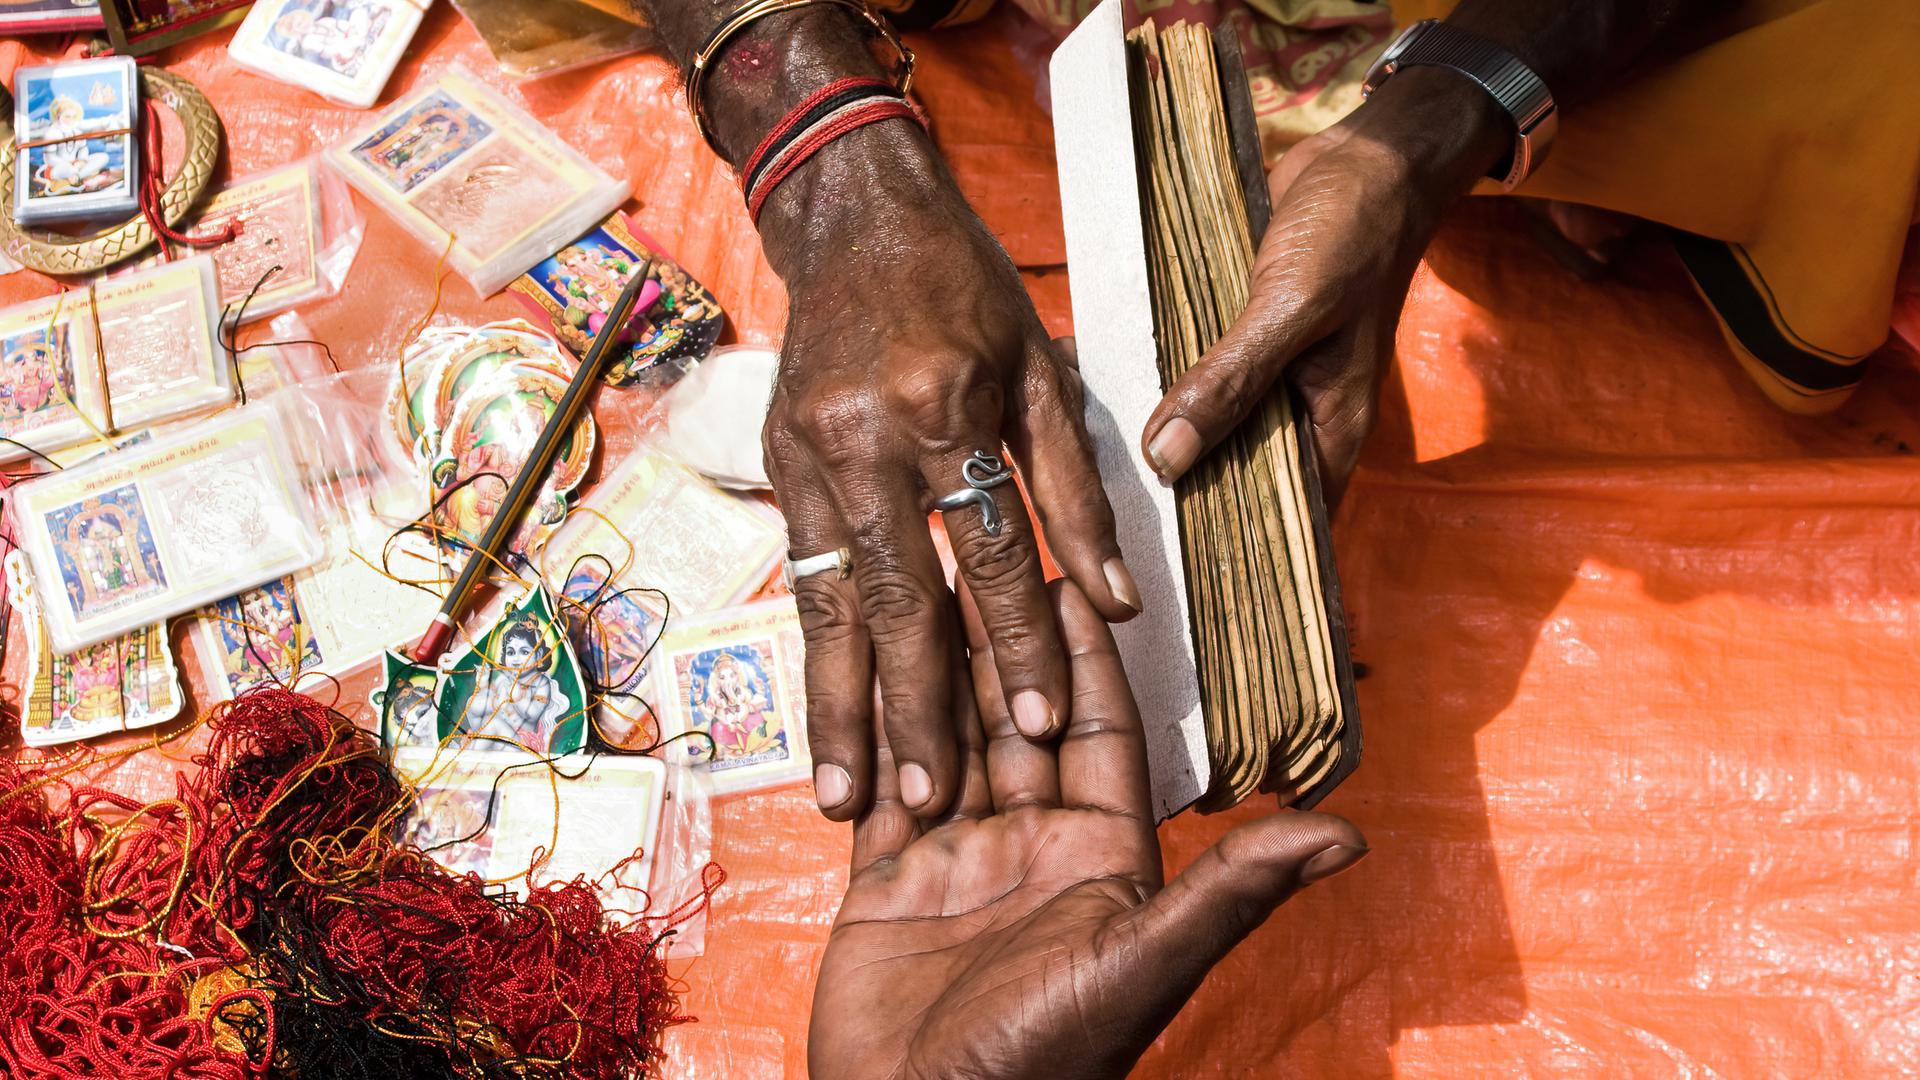 Ein Wahrsager hält die Hand seines Kunden. Daneben liegen Karten mit den Bildern hinduistischer Götter und ein Gewirr roter Schnüre.